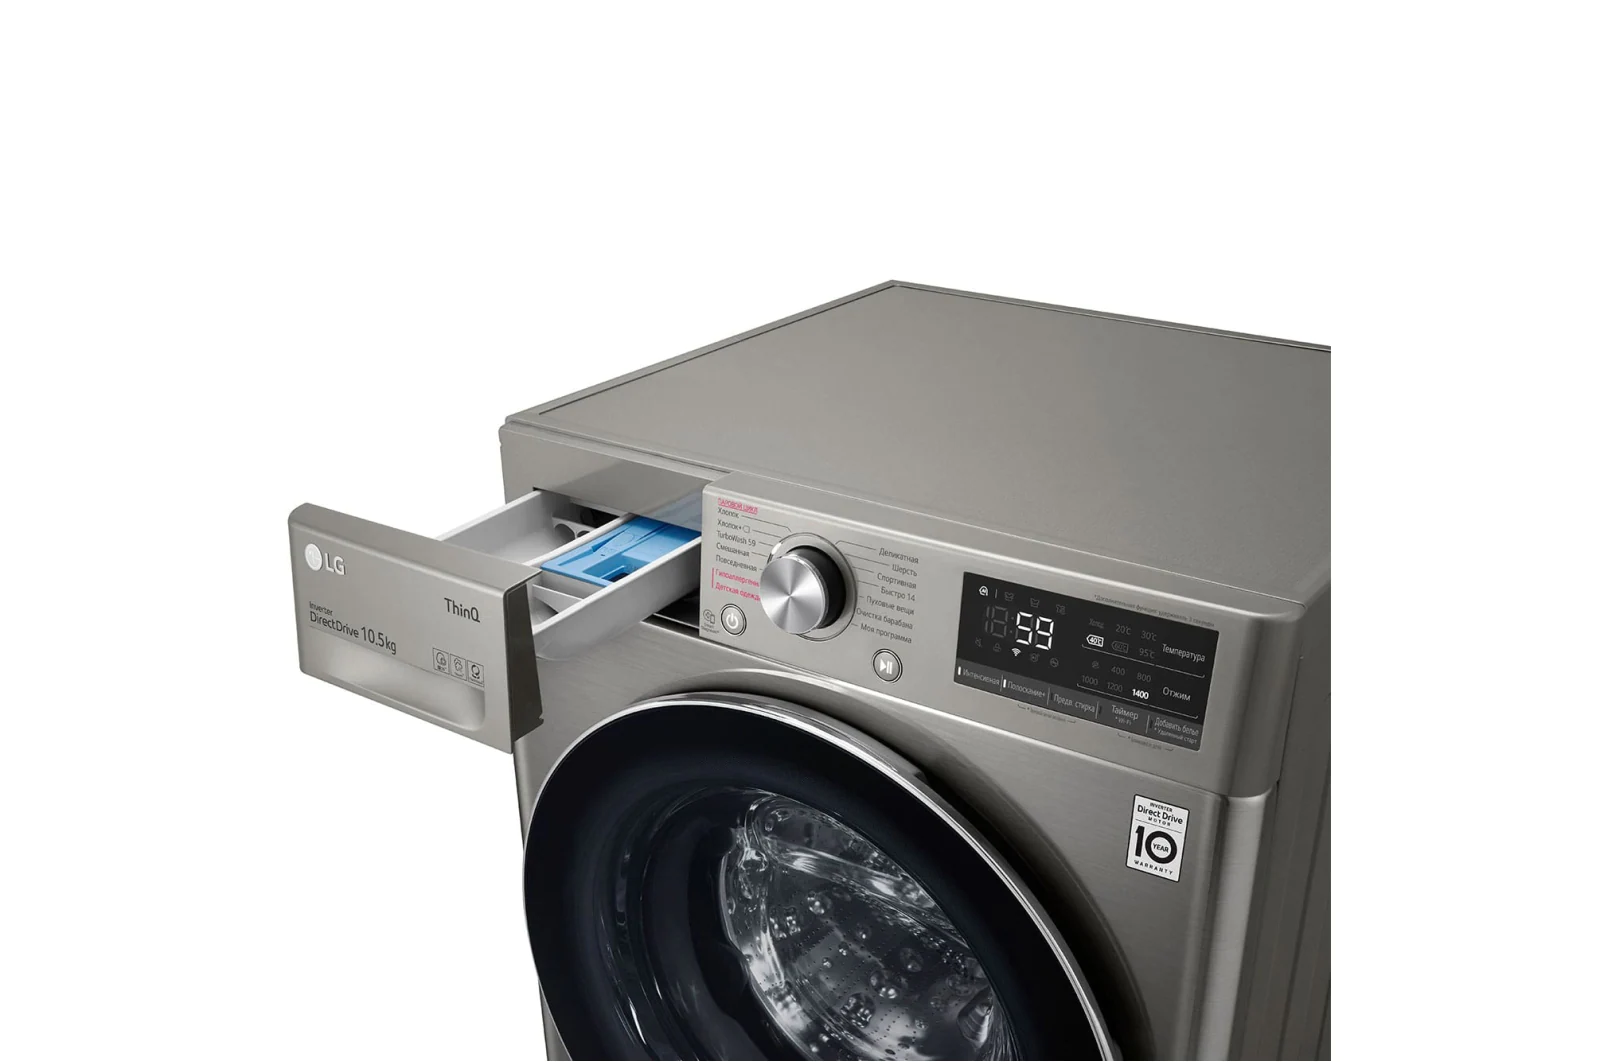 Как перезагрузить стиральную машину LG — журнал LG MAGAZINE Россия | LG MAGAZINE